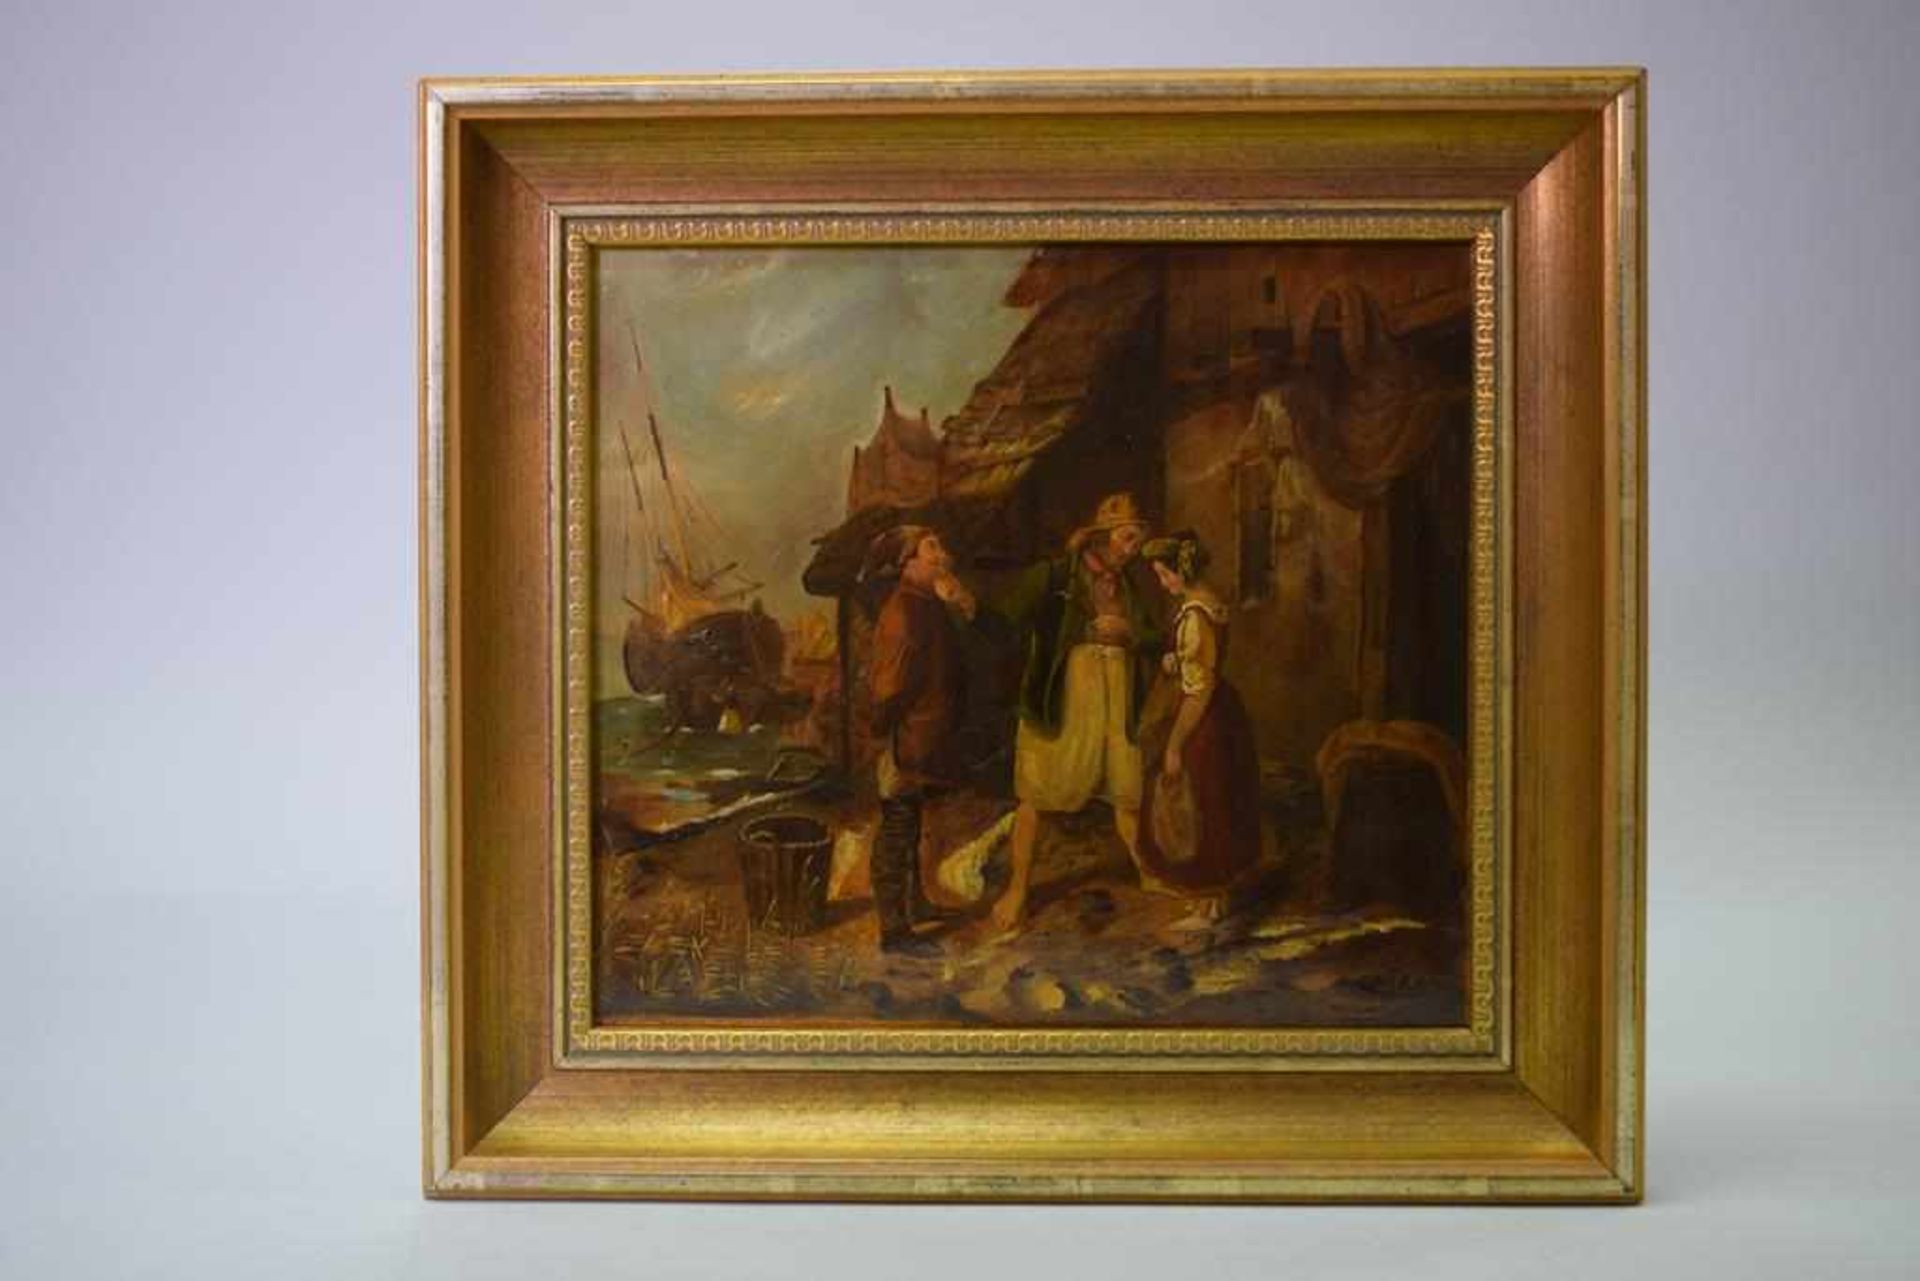 Ölgemälde "Verkuppler" umÖl auf Leinwand, im Hintergrund ein Segelschiff, Maße: 26,5 cm x 24 cm,